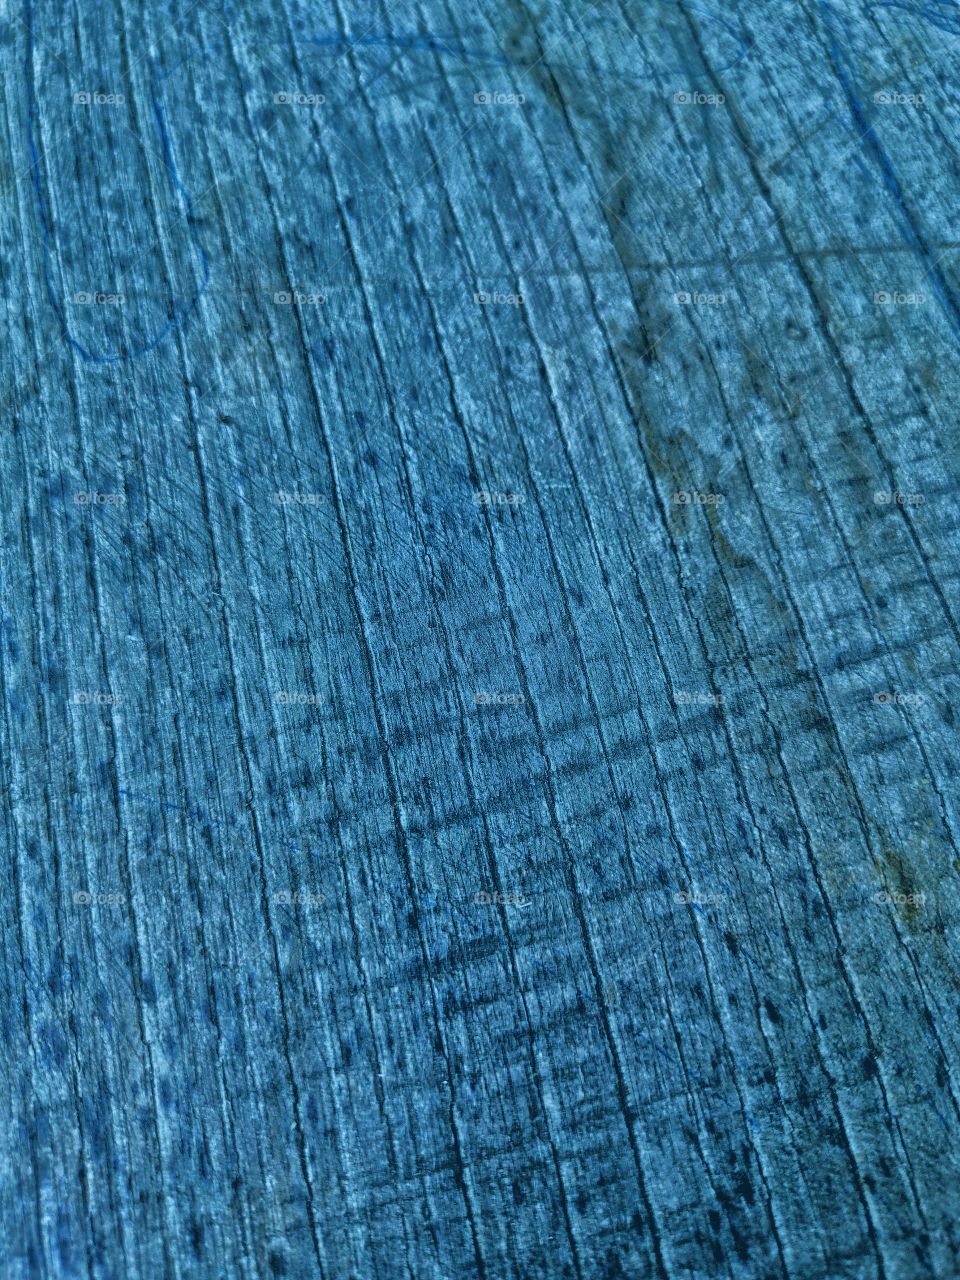 Background Textur blue wooden